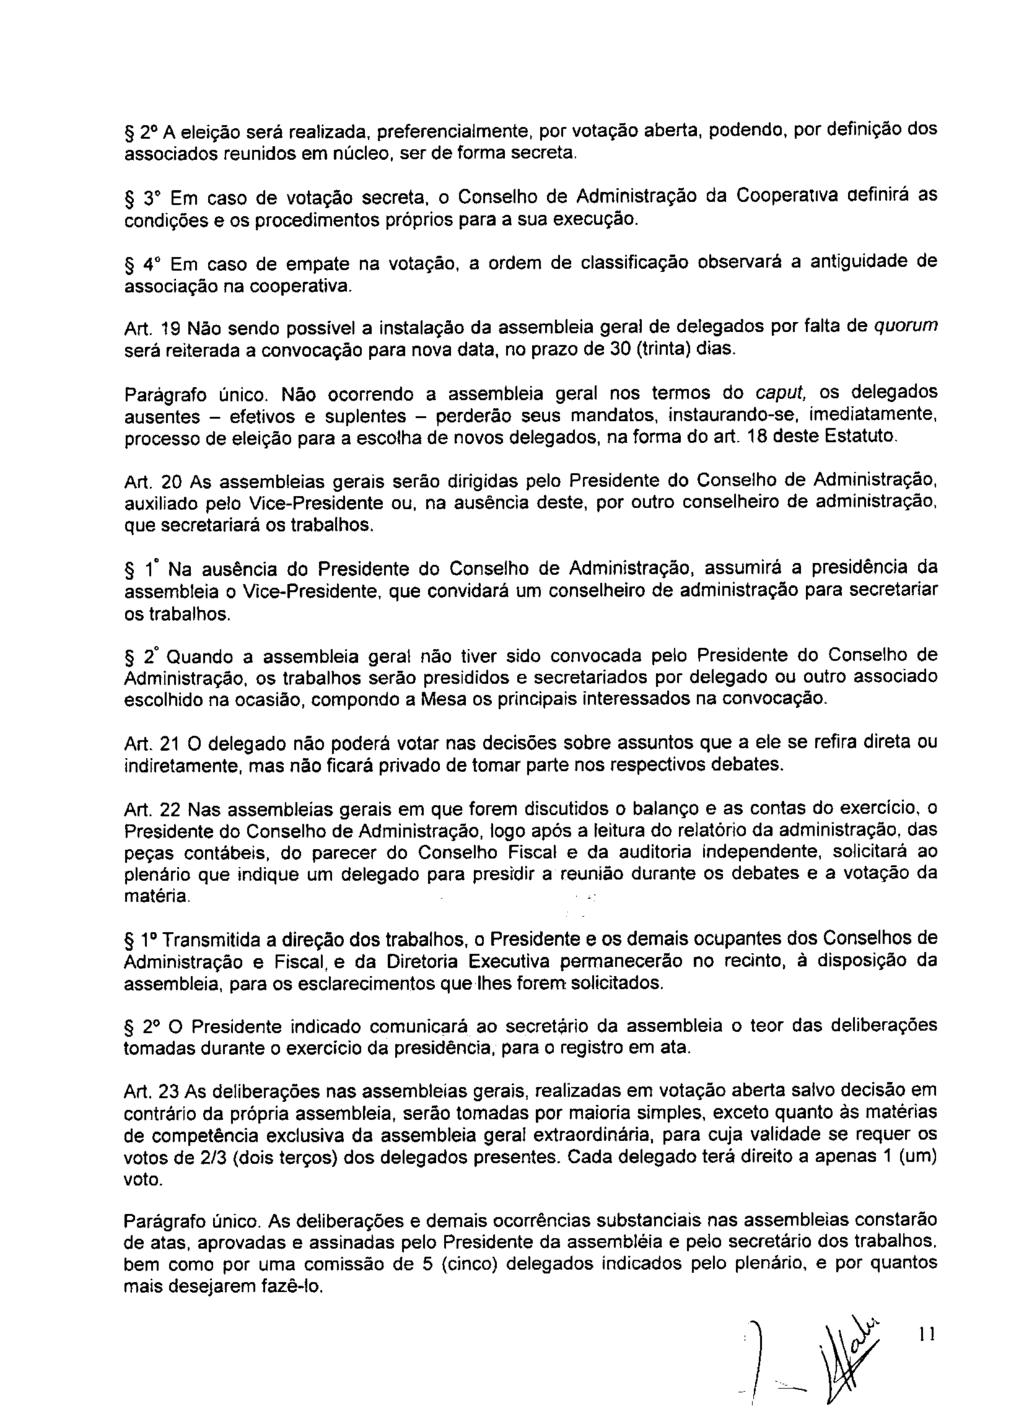 fls. 17 Este documento é cópia do original, assinado digitalmente por ANA ROSA MARQUES CROCE e Tribunal de Justica Sao Paulo, protocolado em 10/02/2016 às 15:37, sob o número